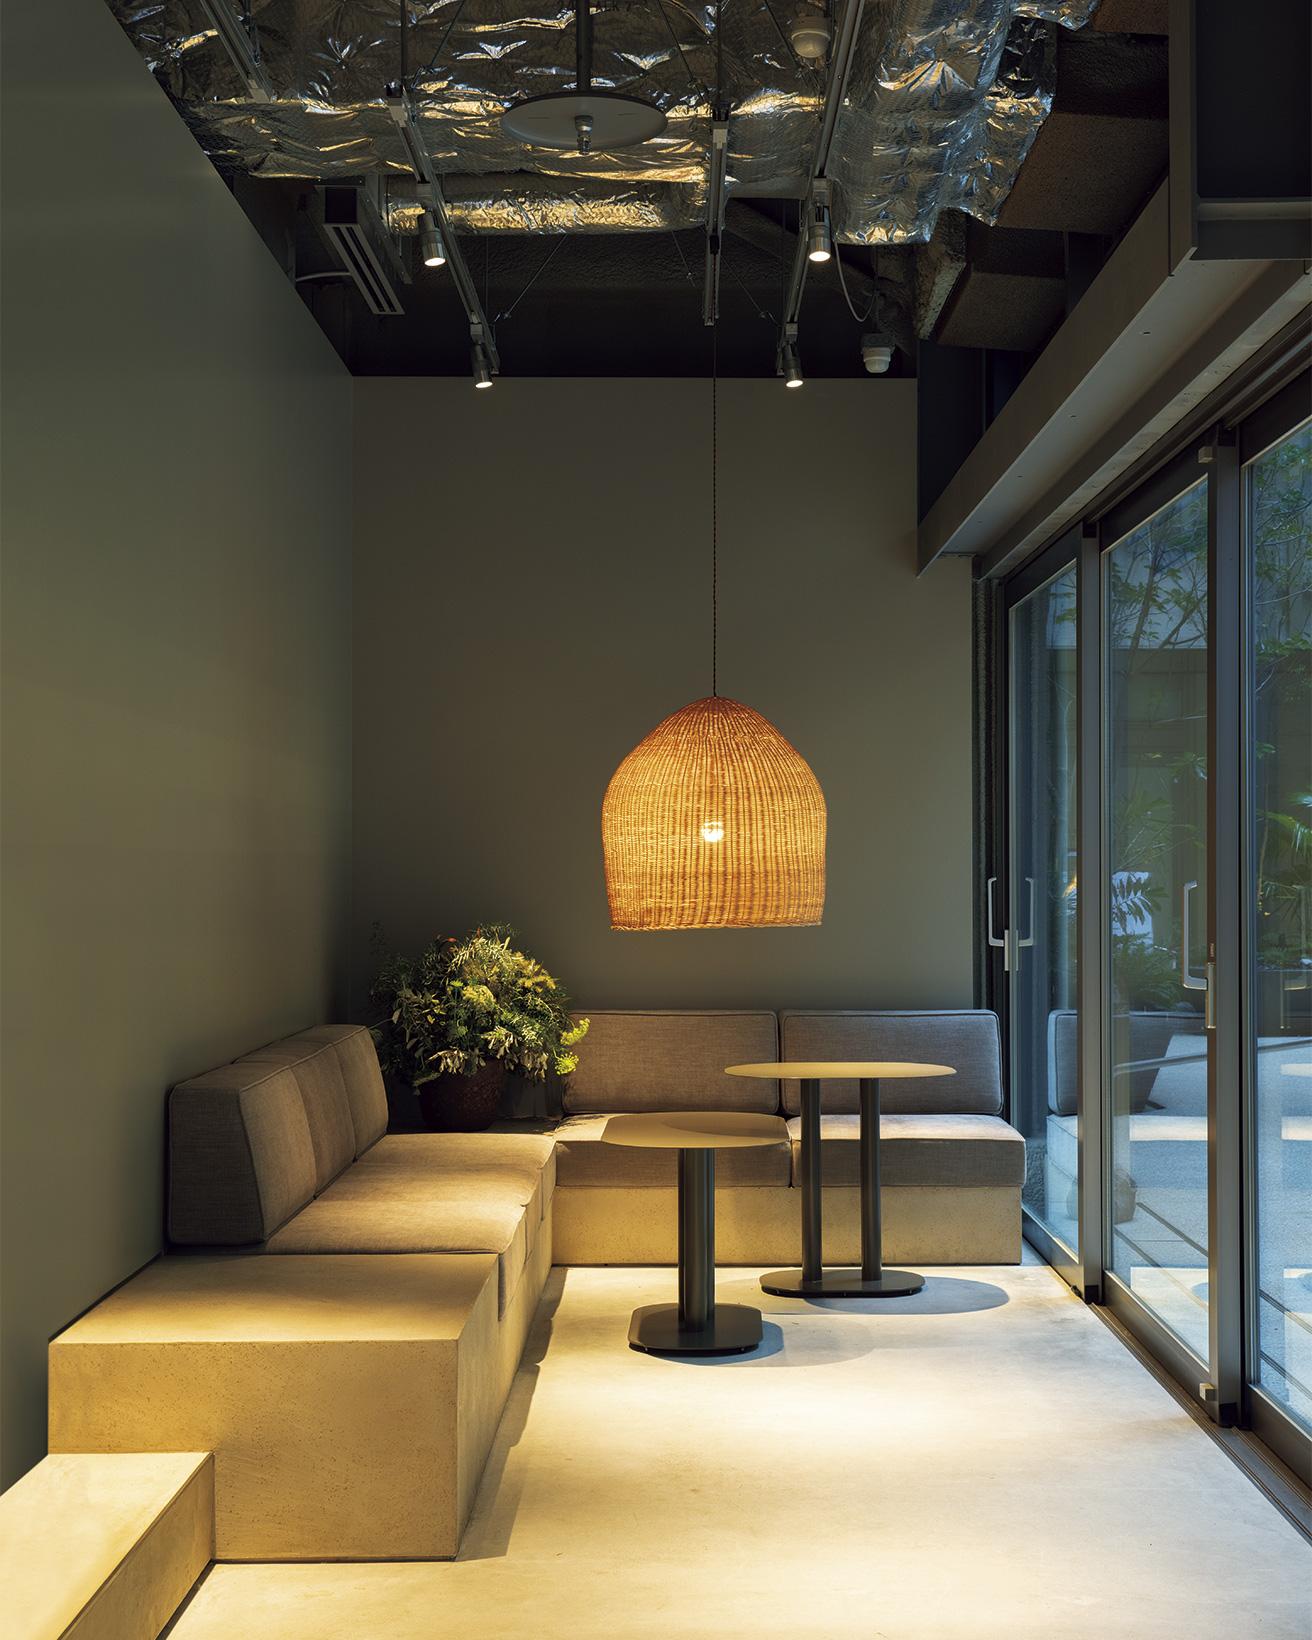 〈ブルーボトルコーヒー〉創業者のジェームス・フリーマンが憧れた、日本の喫茶店のようなくつろげるソファ席。